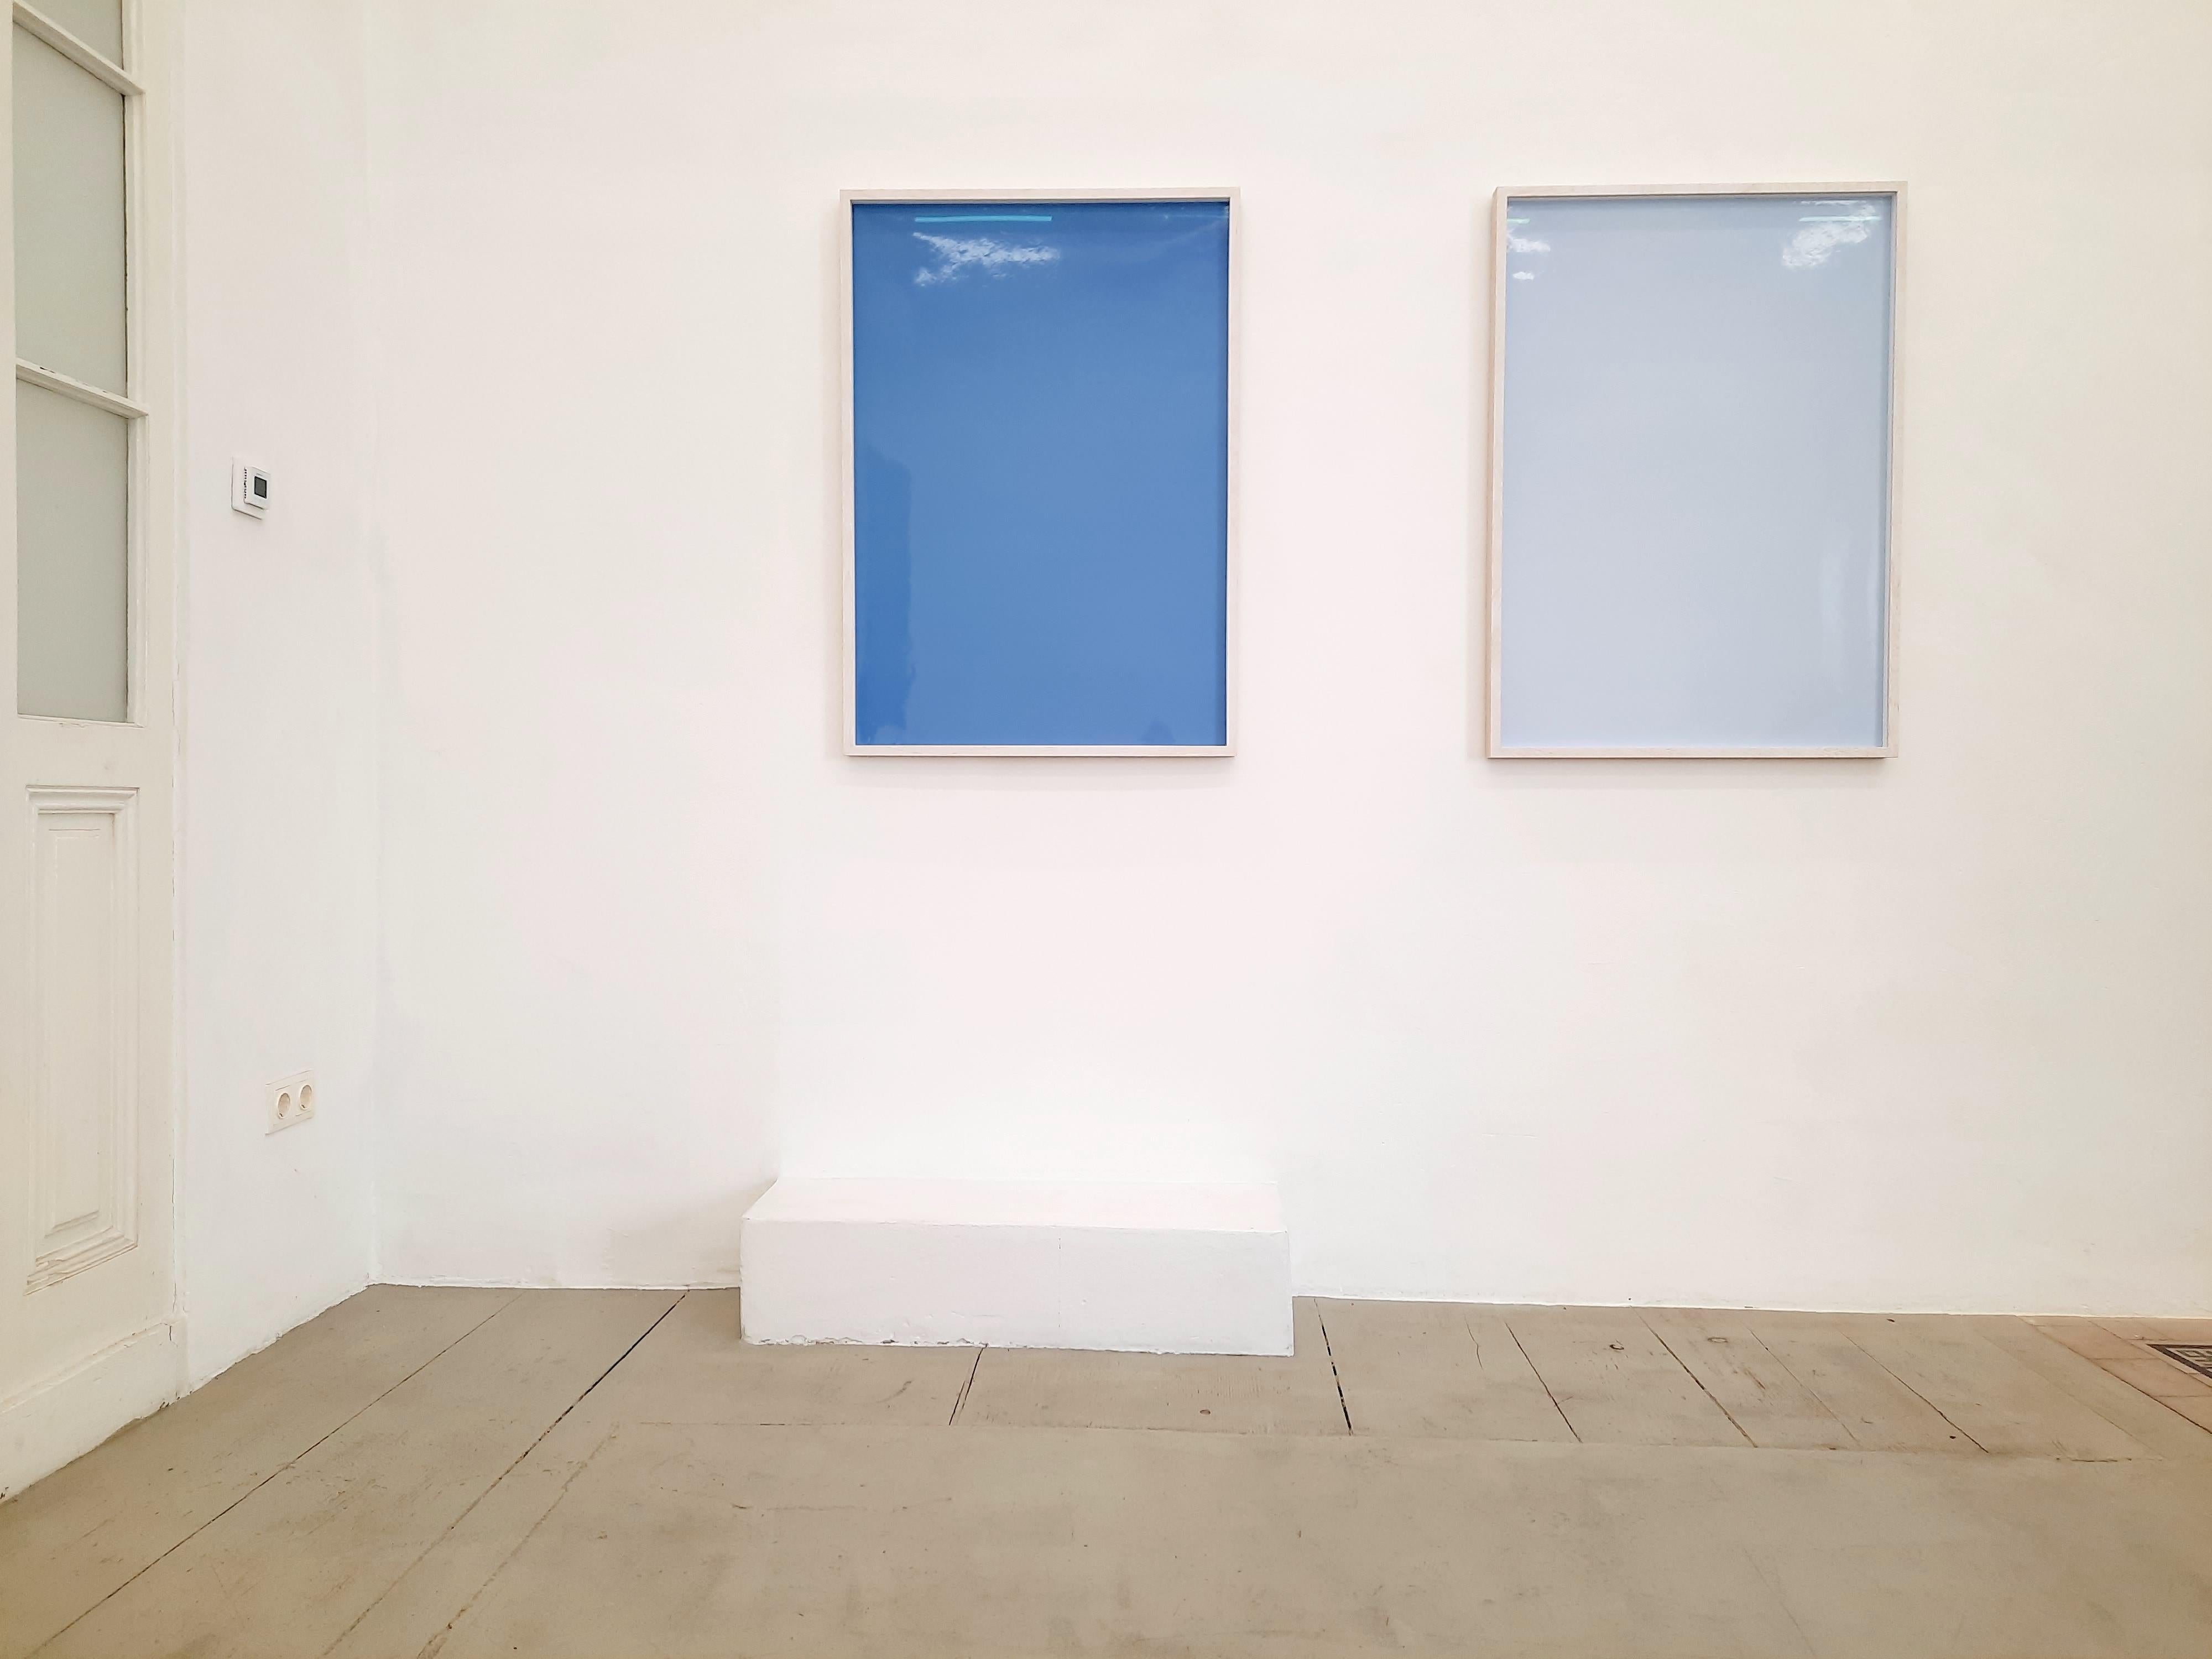 Schatten auf Papier, Nr. 4 – Zeitgenössische abstrakte blaue monochrome Fotografie (Blau), Abstract Photograph, von Ulrike Königshofer